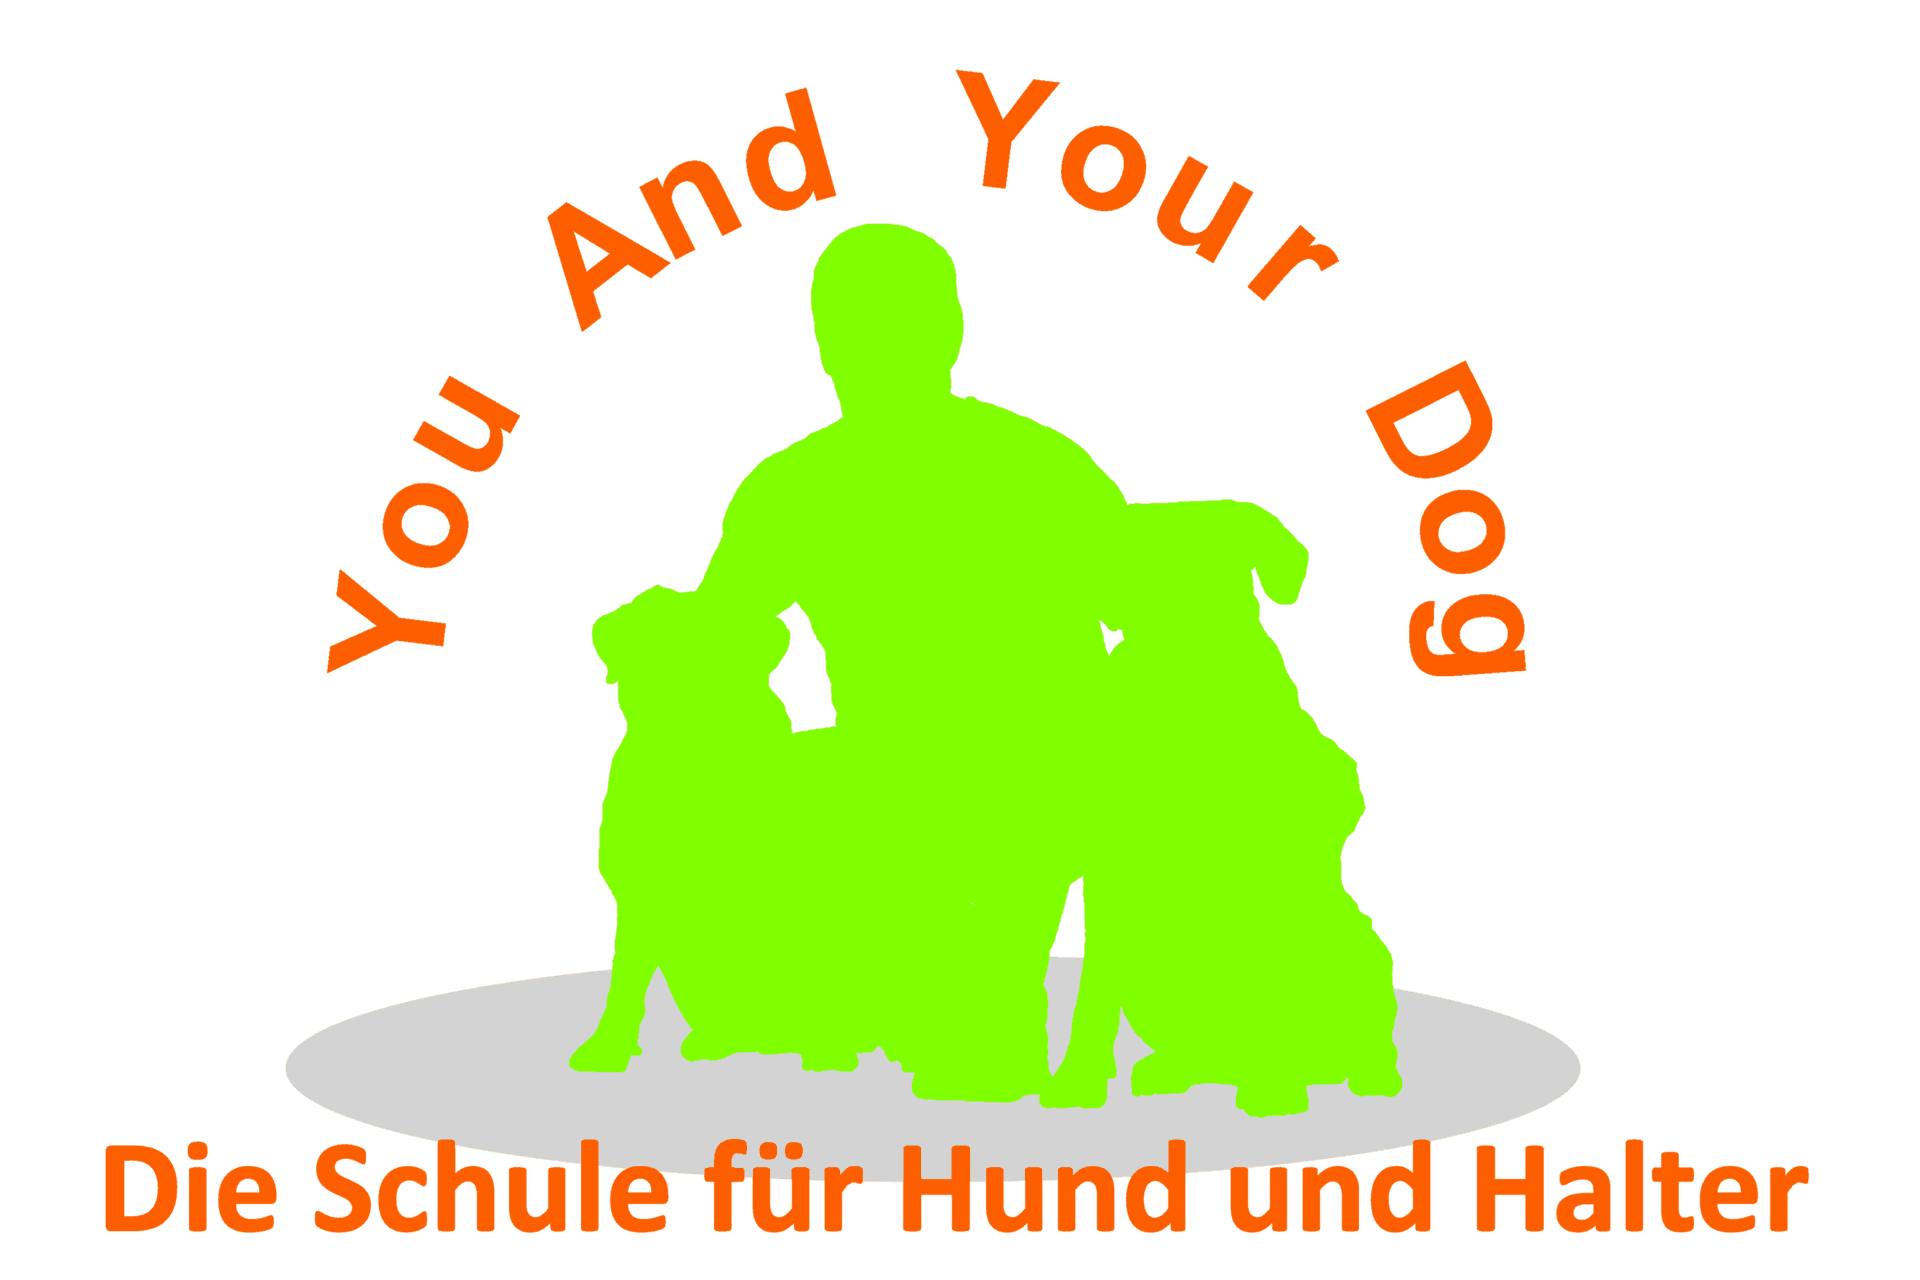 You And Your Dog - Die Schule für Hund und Halter